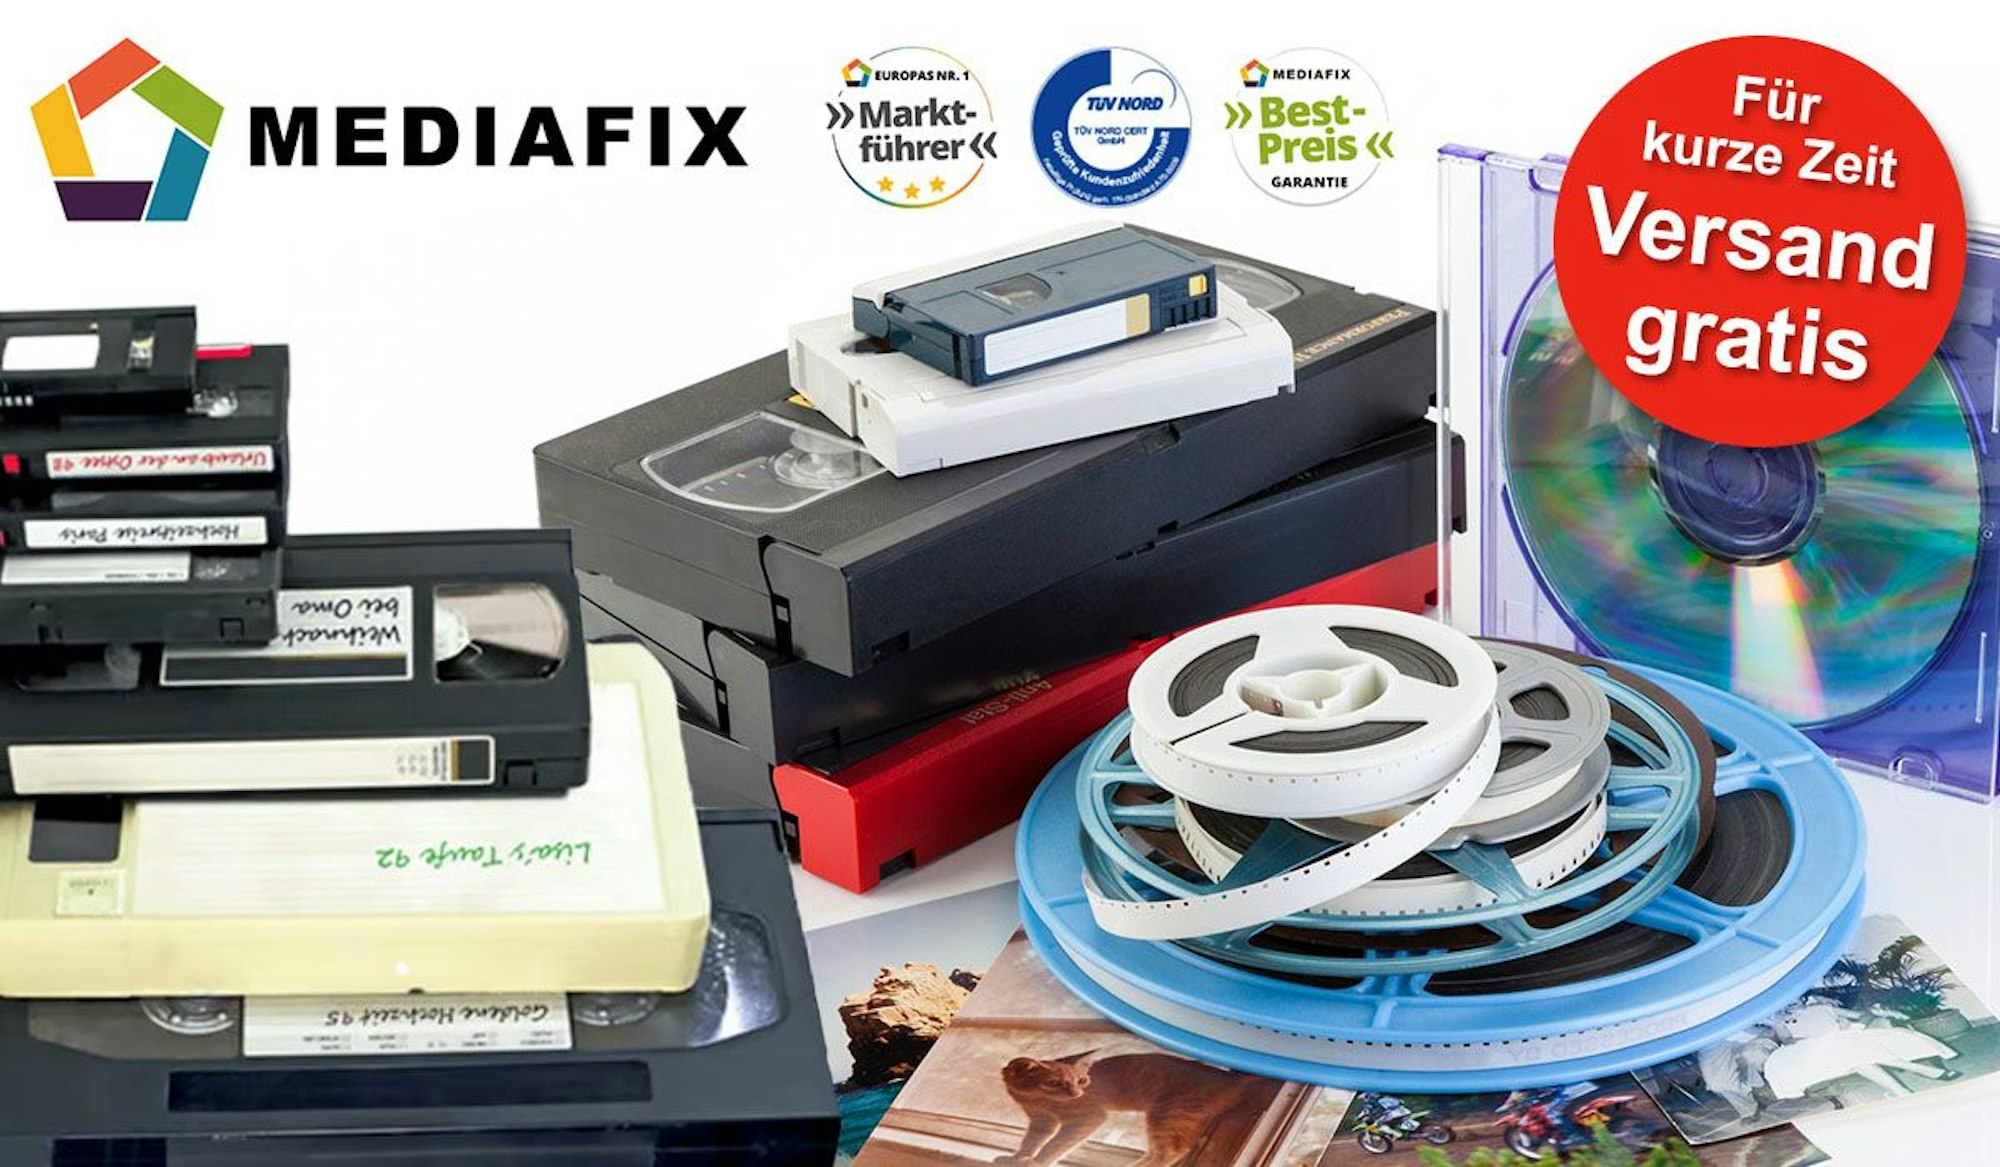 Videokassetten, VHS, MiniDV, Kassetten, Fotos, Tonbänder, Schmalspurfilme liegen auf einem Haufen.